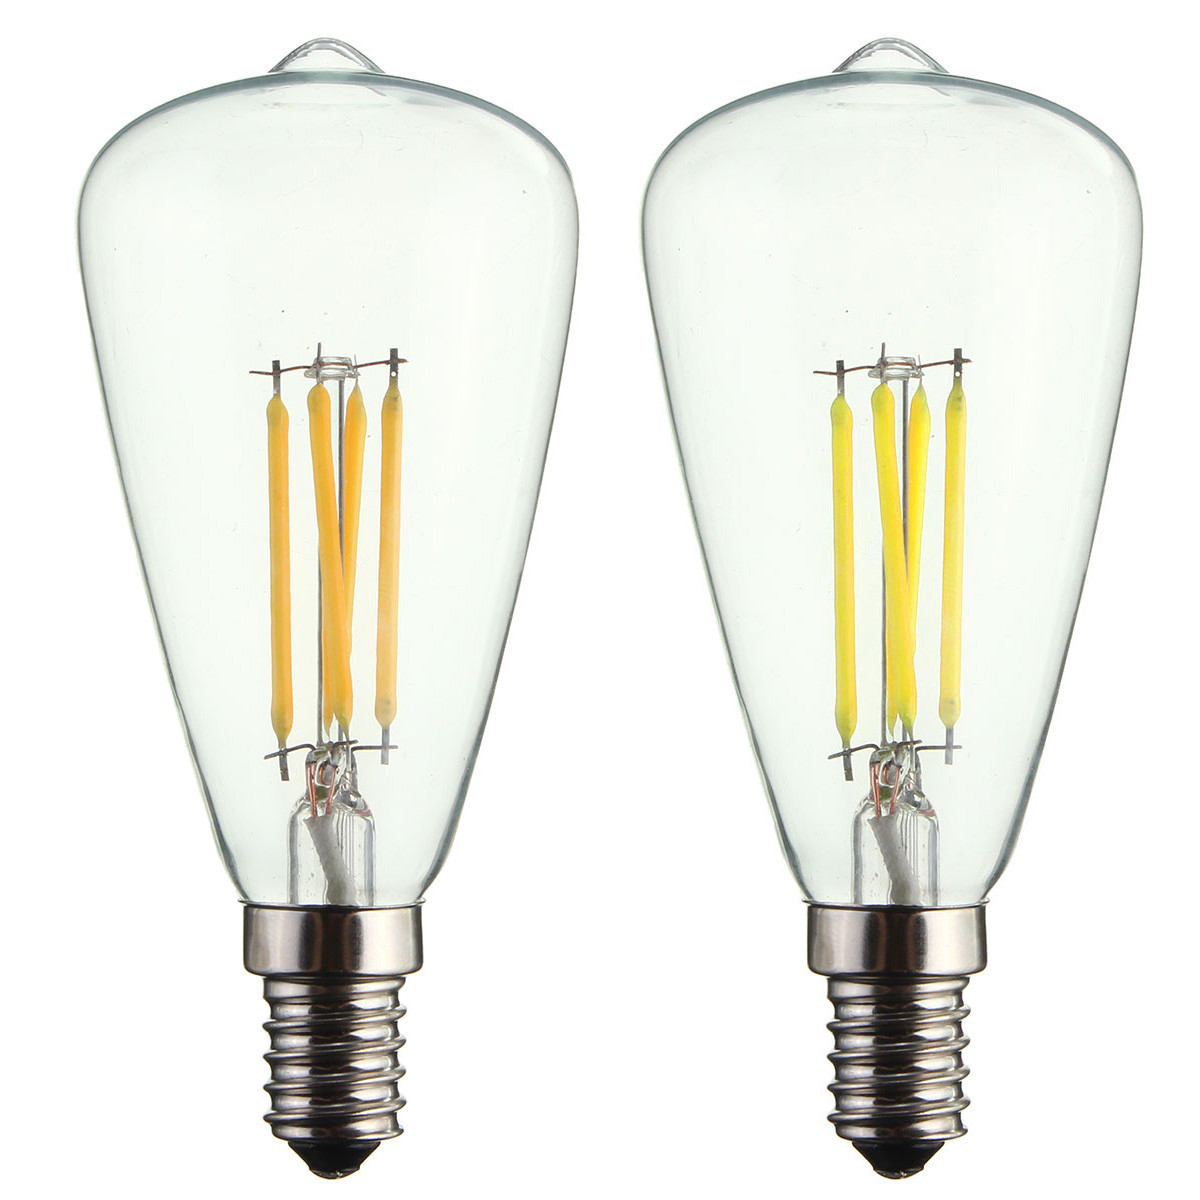 Kingso-AC220V-E14-4W-LED-Filament-COB-Light-Bulb-Edison-Retro-Vintage-Lamp-for-Home-Decor-1516116-2